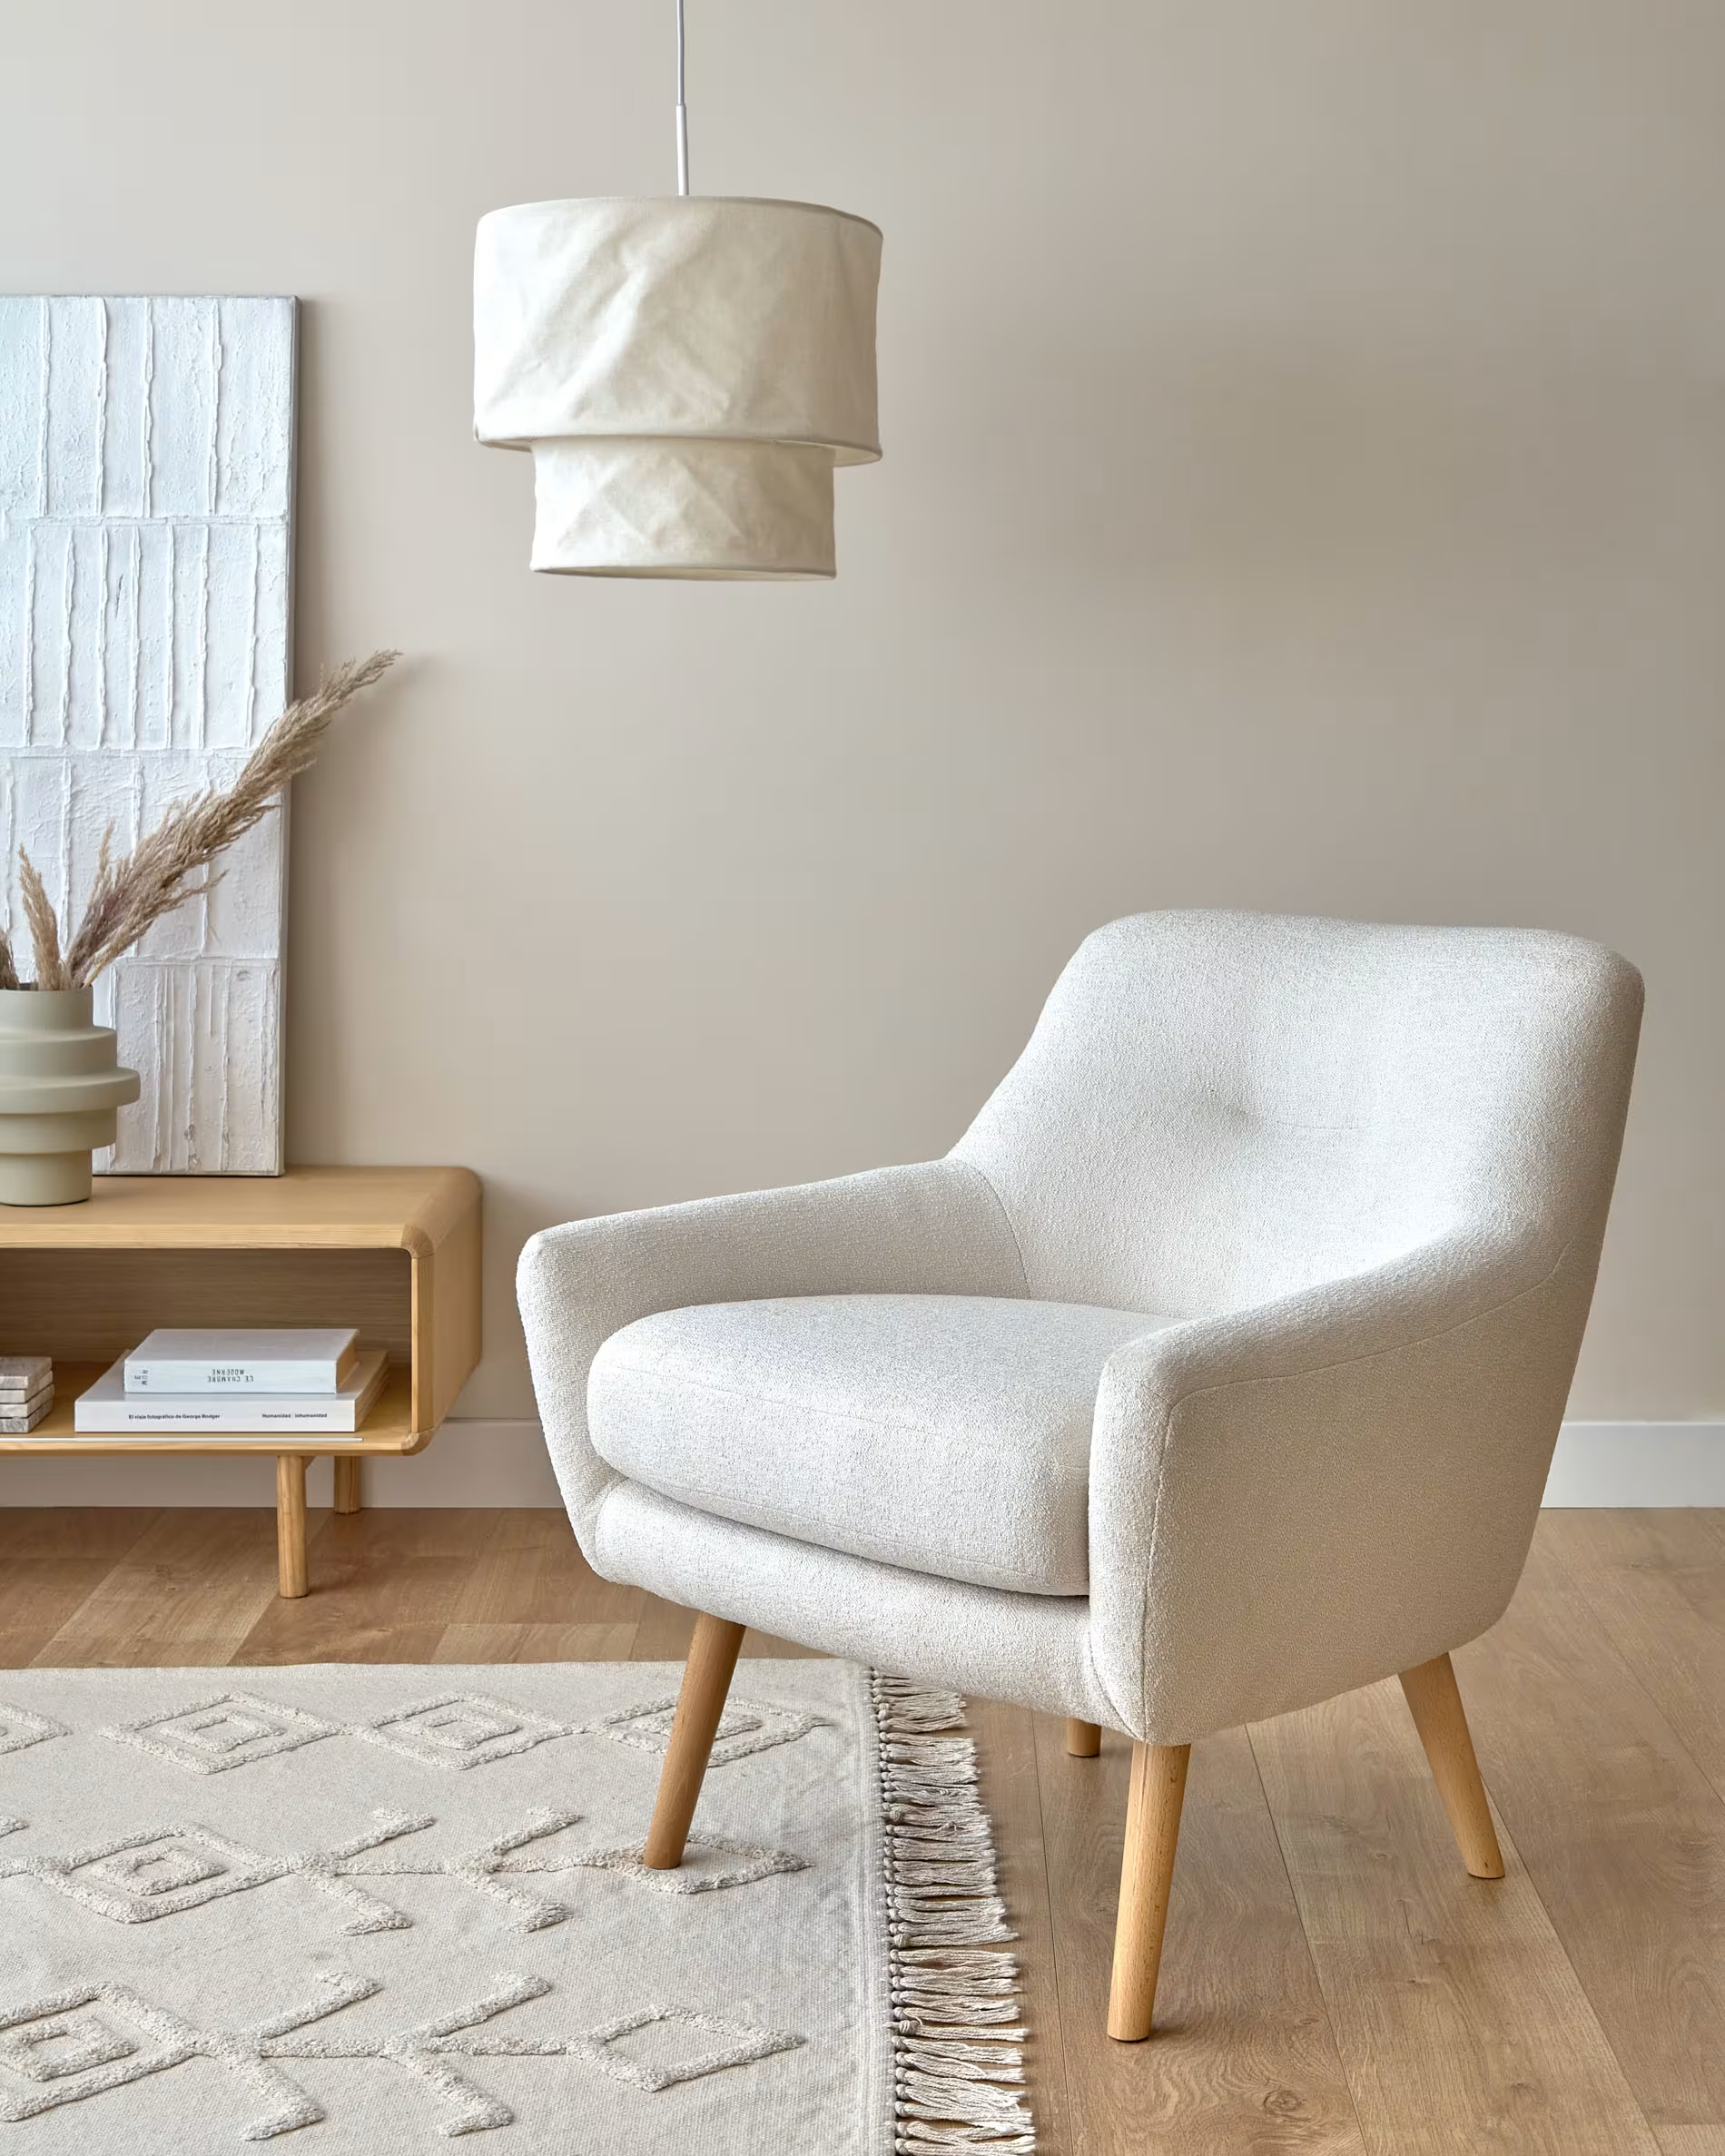 Salón nórdico con lámpara de techo de pantalla de tela blanco crudo sobre sofá individual del mismo color alfombra texturizada en color crema